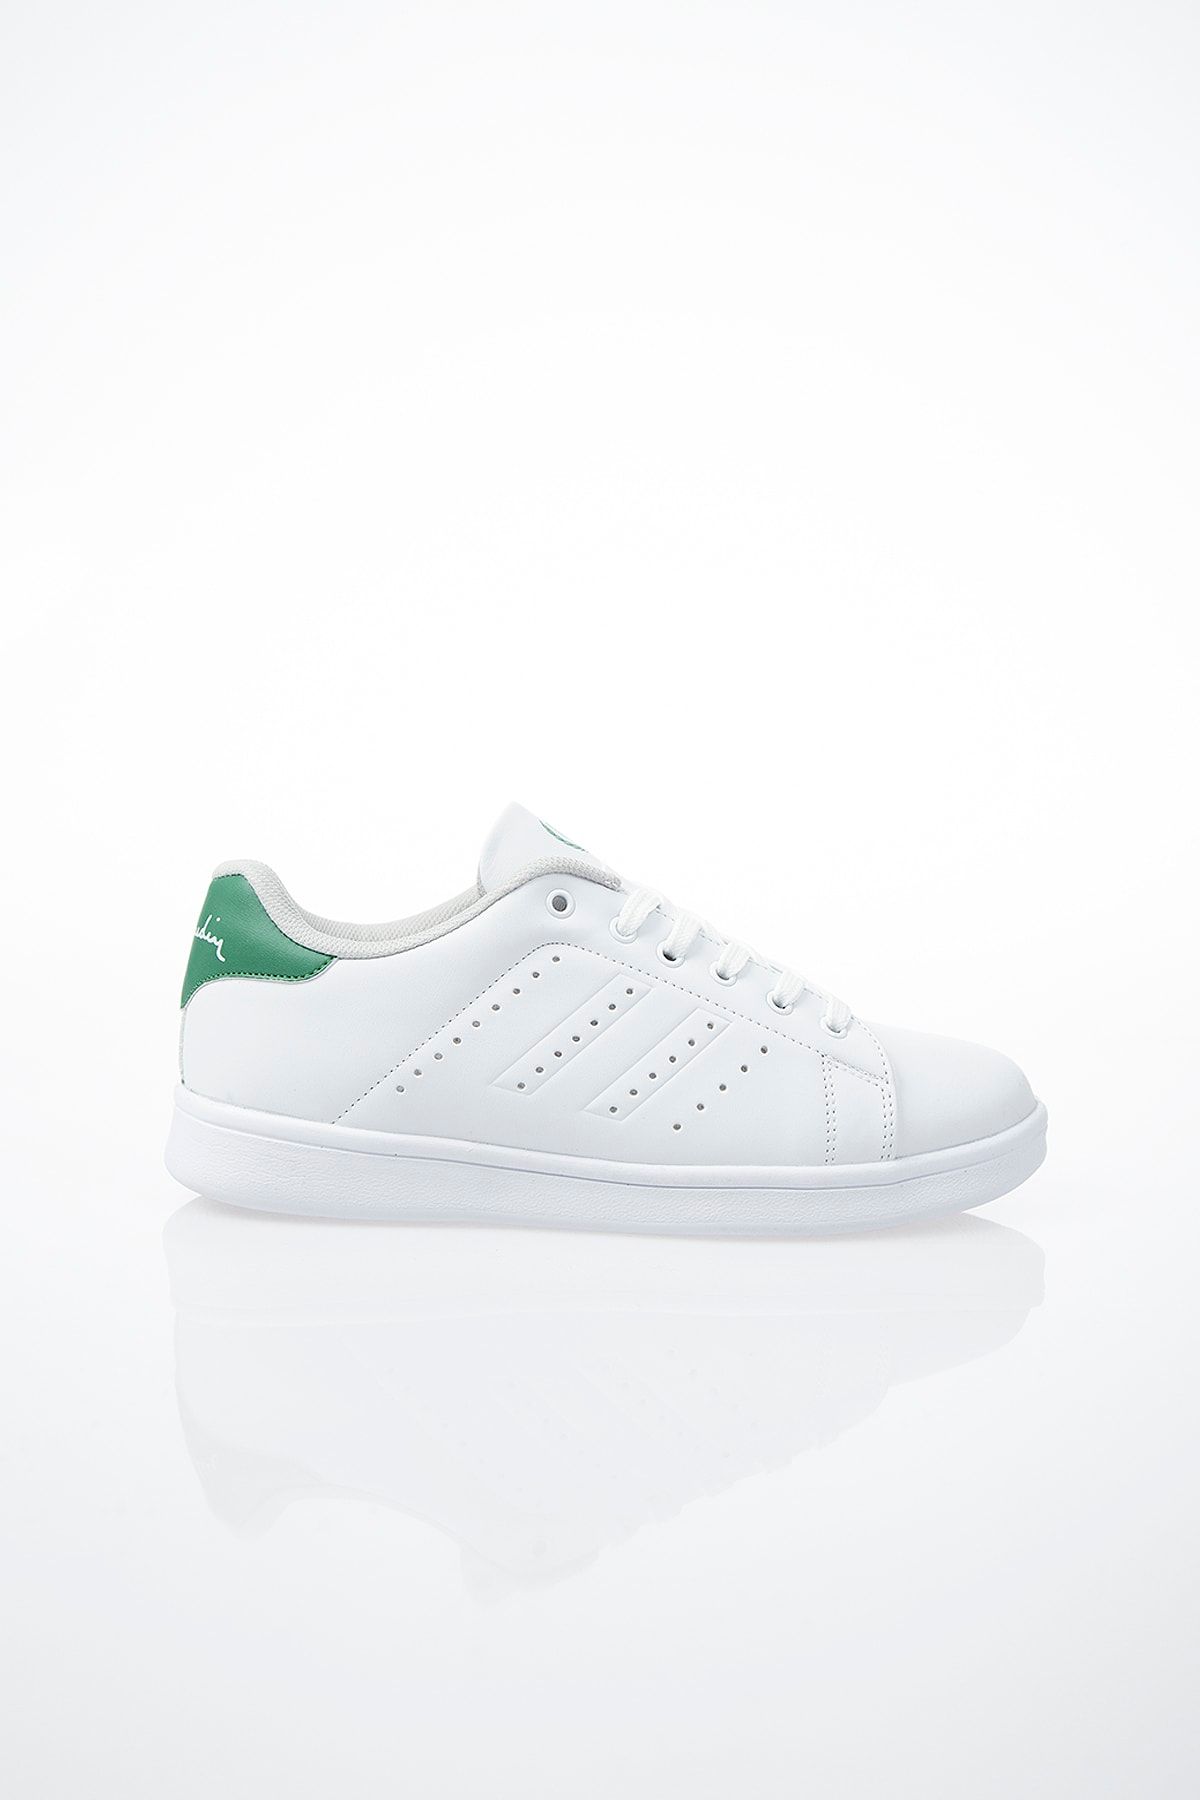 Pierre Cardin Kadın Günlük Spor Ayakkabı Beyaz Yeşil Pcs-10144